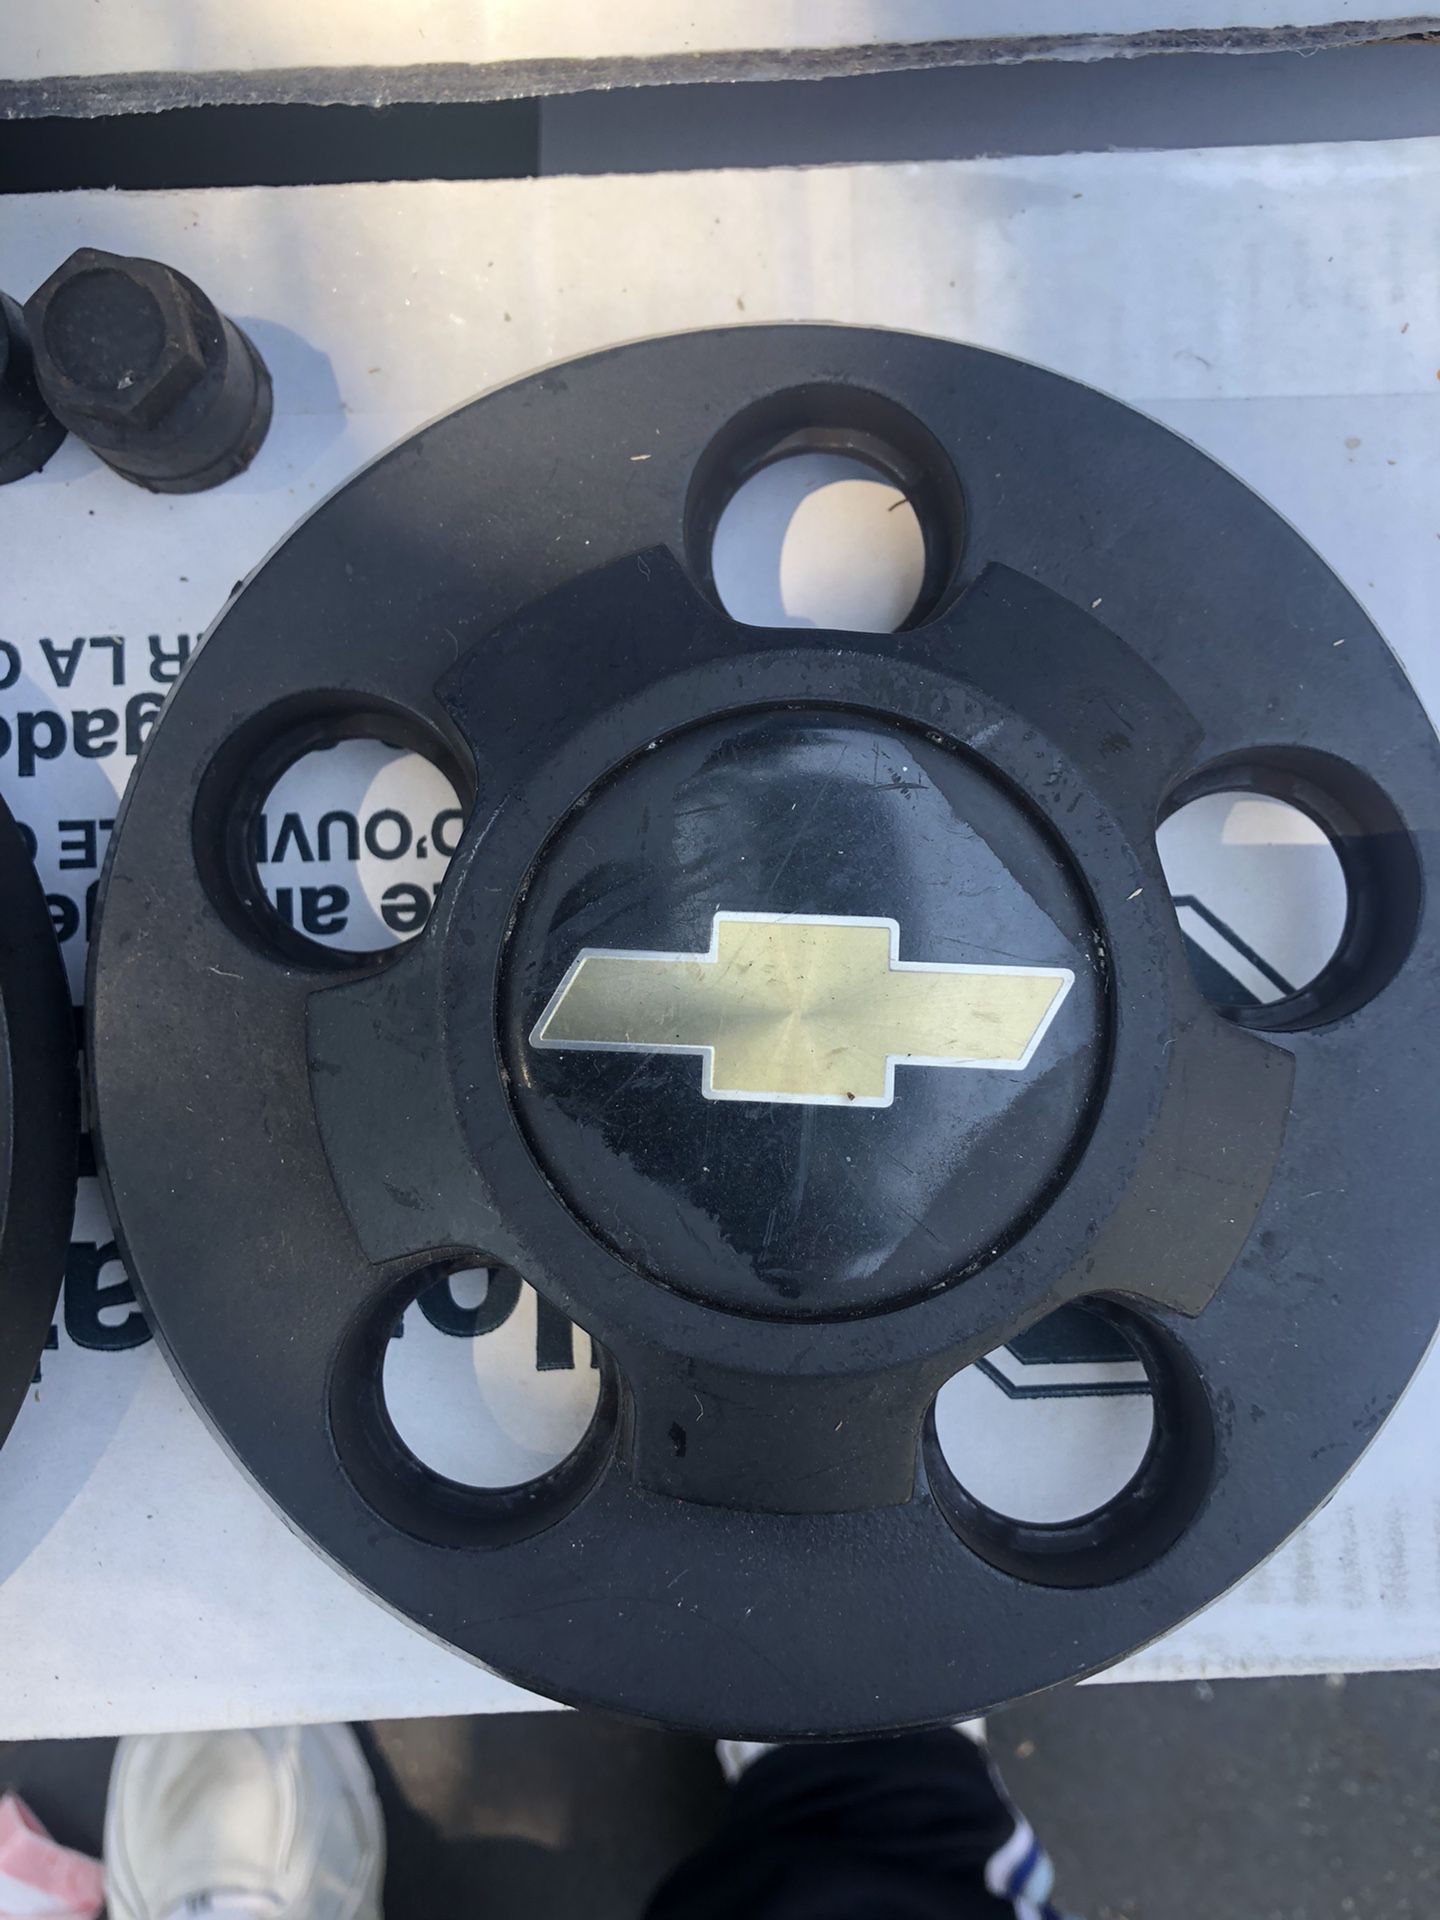 Chevy Blazer Wheel Caps S10 